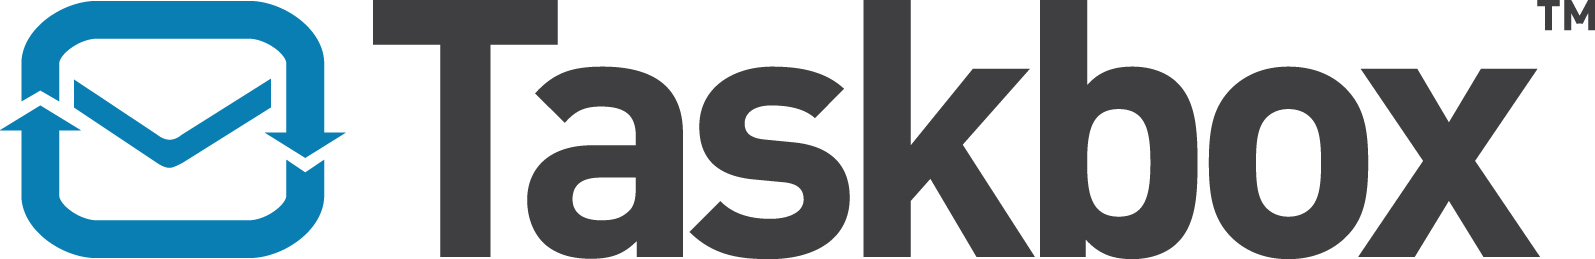 taskbox_logo.jpg